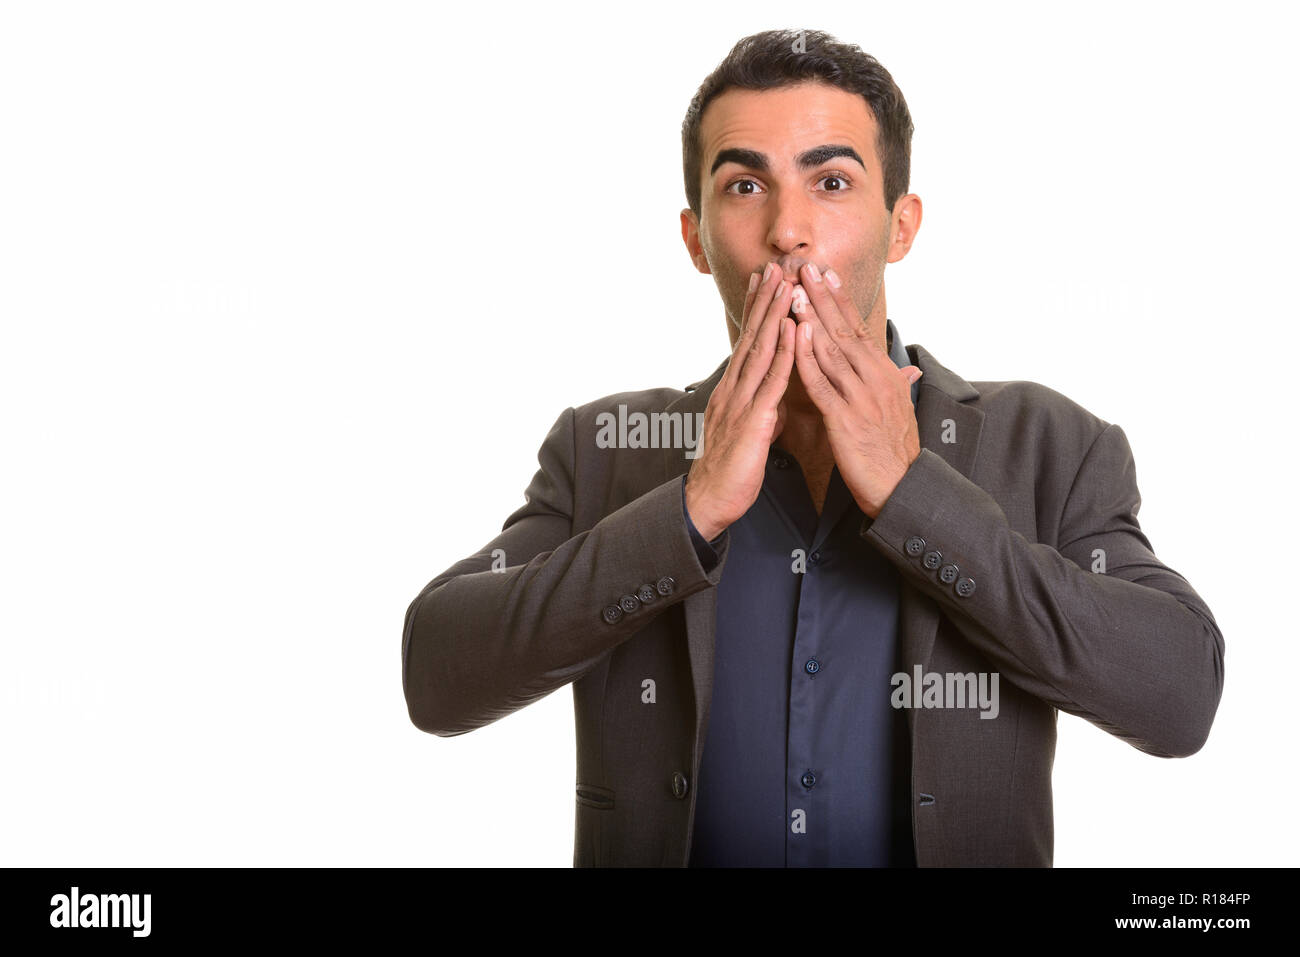 Retrato de joven apuesto empresario persa mirando sorprendido Foto de stock